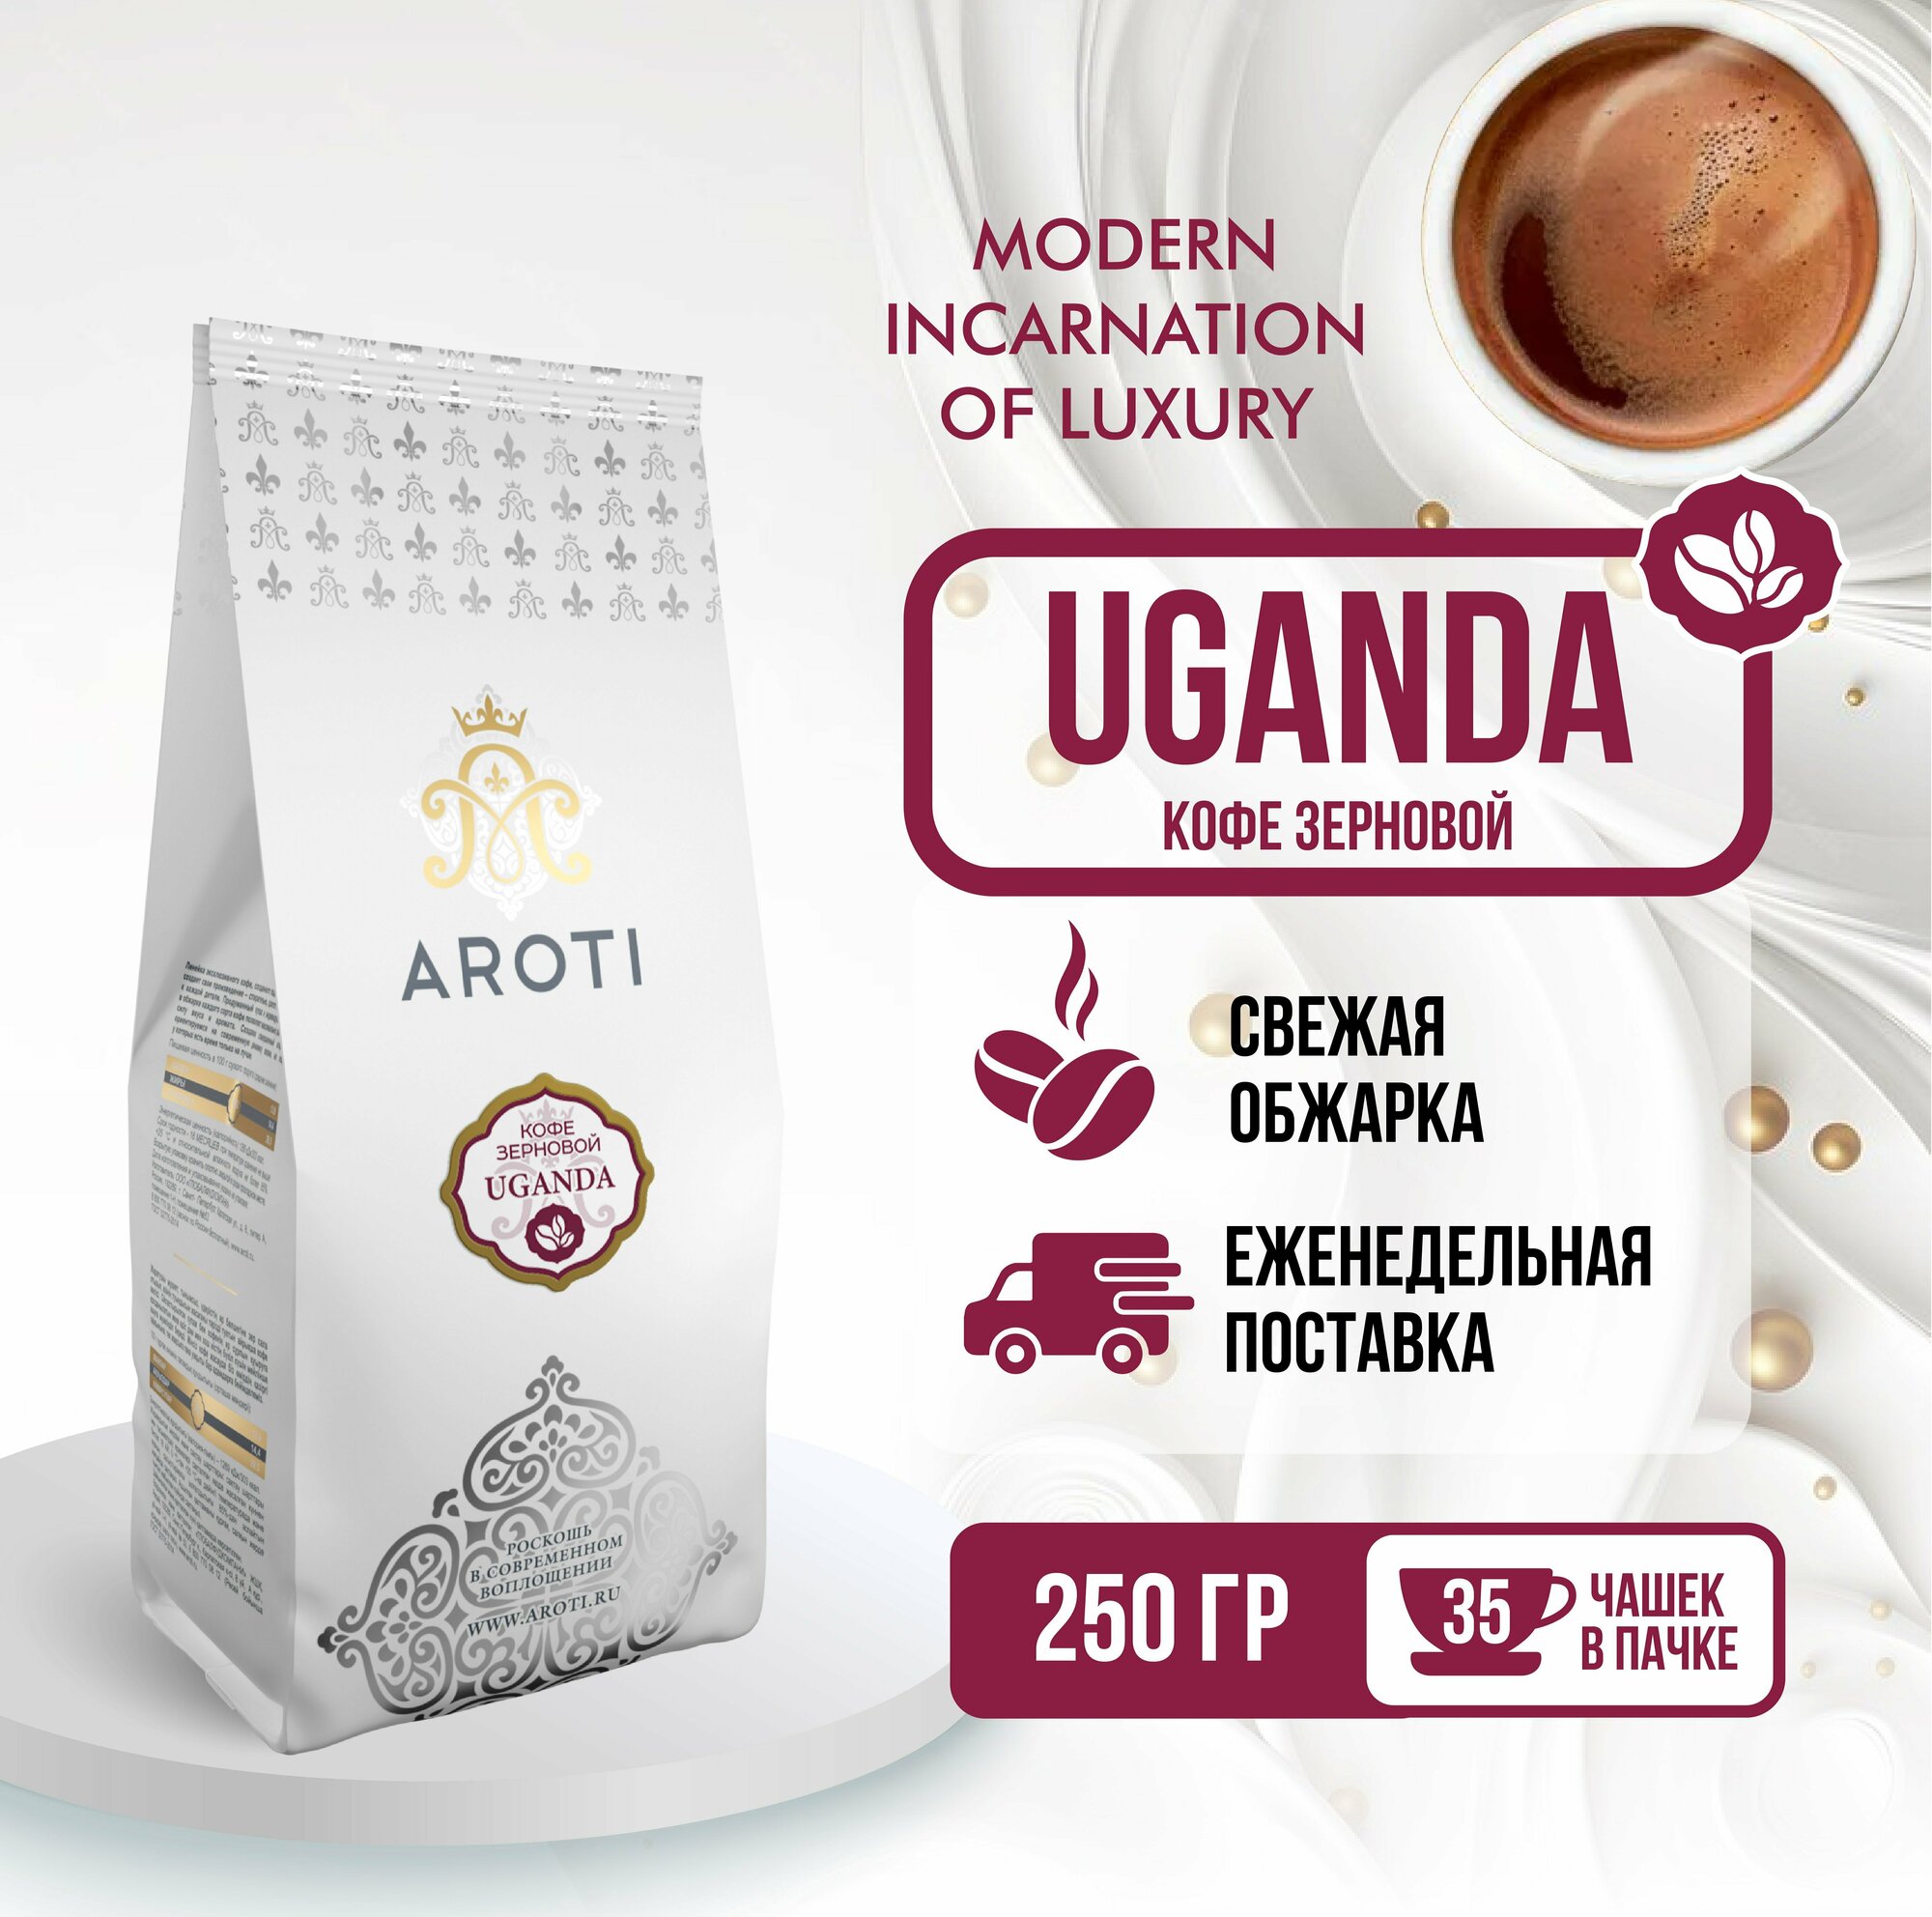 Кофе в зёрнах моносорт робуста UGANDA (Уганда), Aroti, средняя обжарка, свежеобжаренный, 250гр.